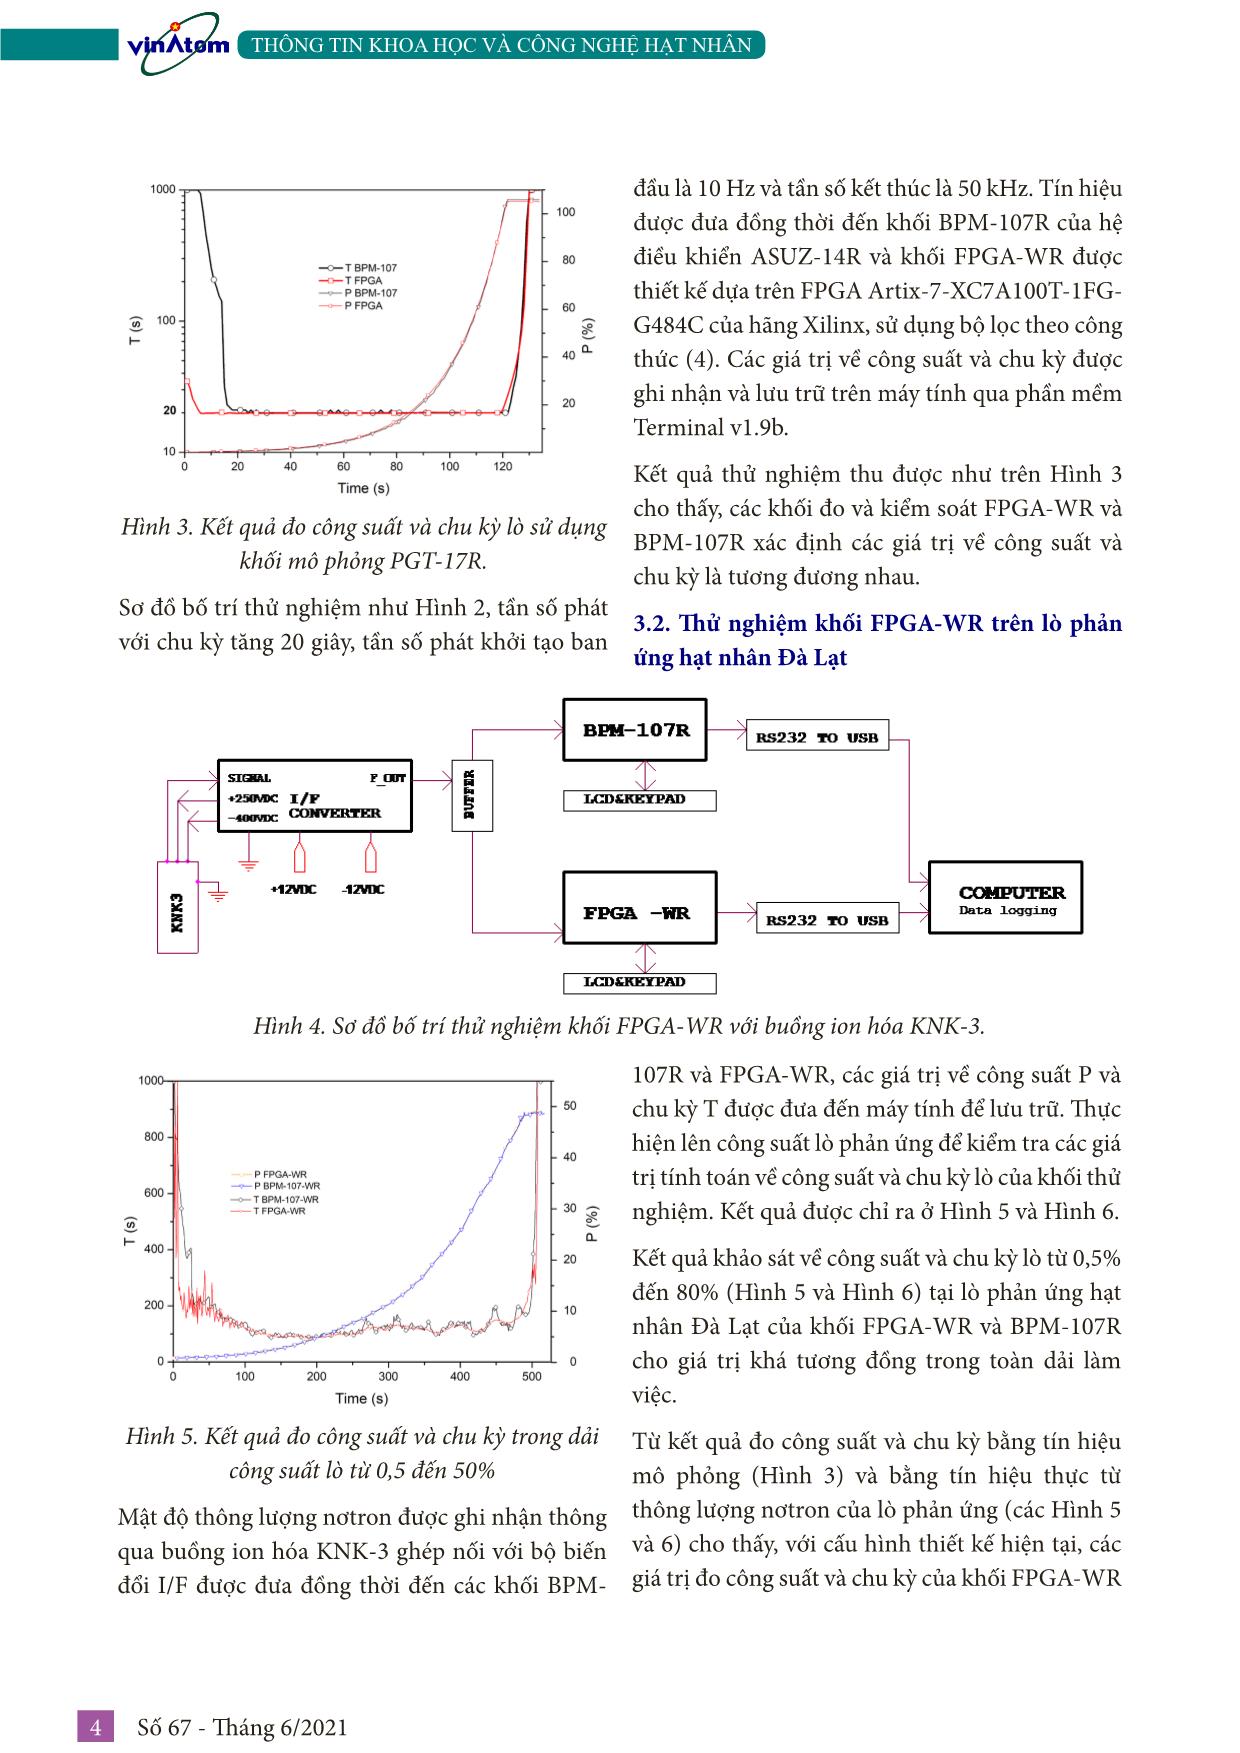 Thiết kế kênh đo thông lượng nơtron sử dụng buồng ion hóa KNK-3 tại lò phản ứng hạt nhân Đà Lạt trang 4